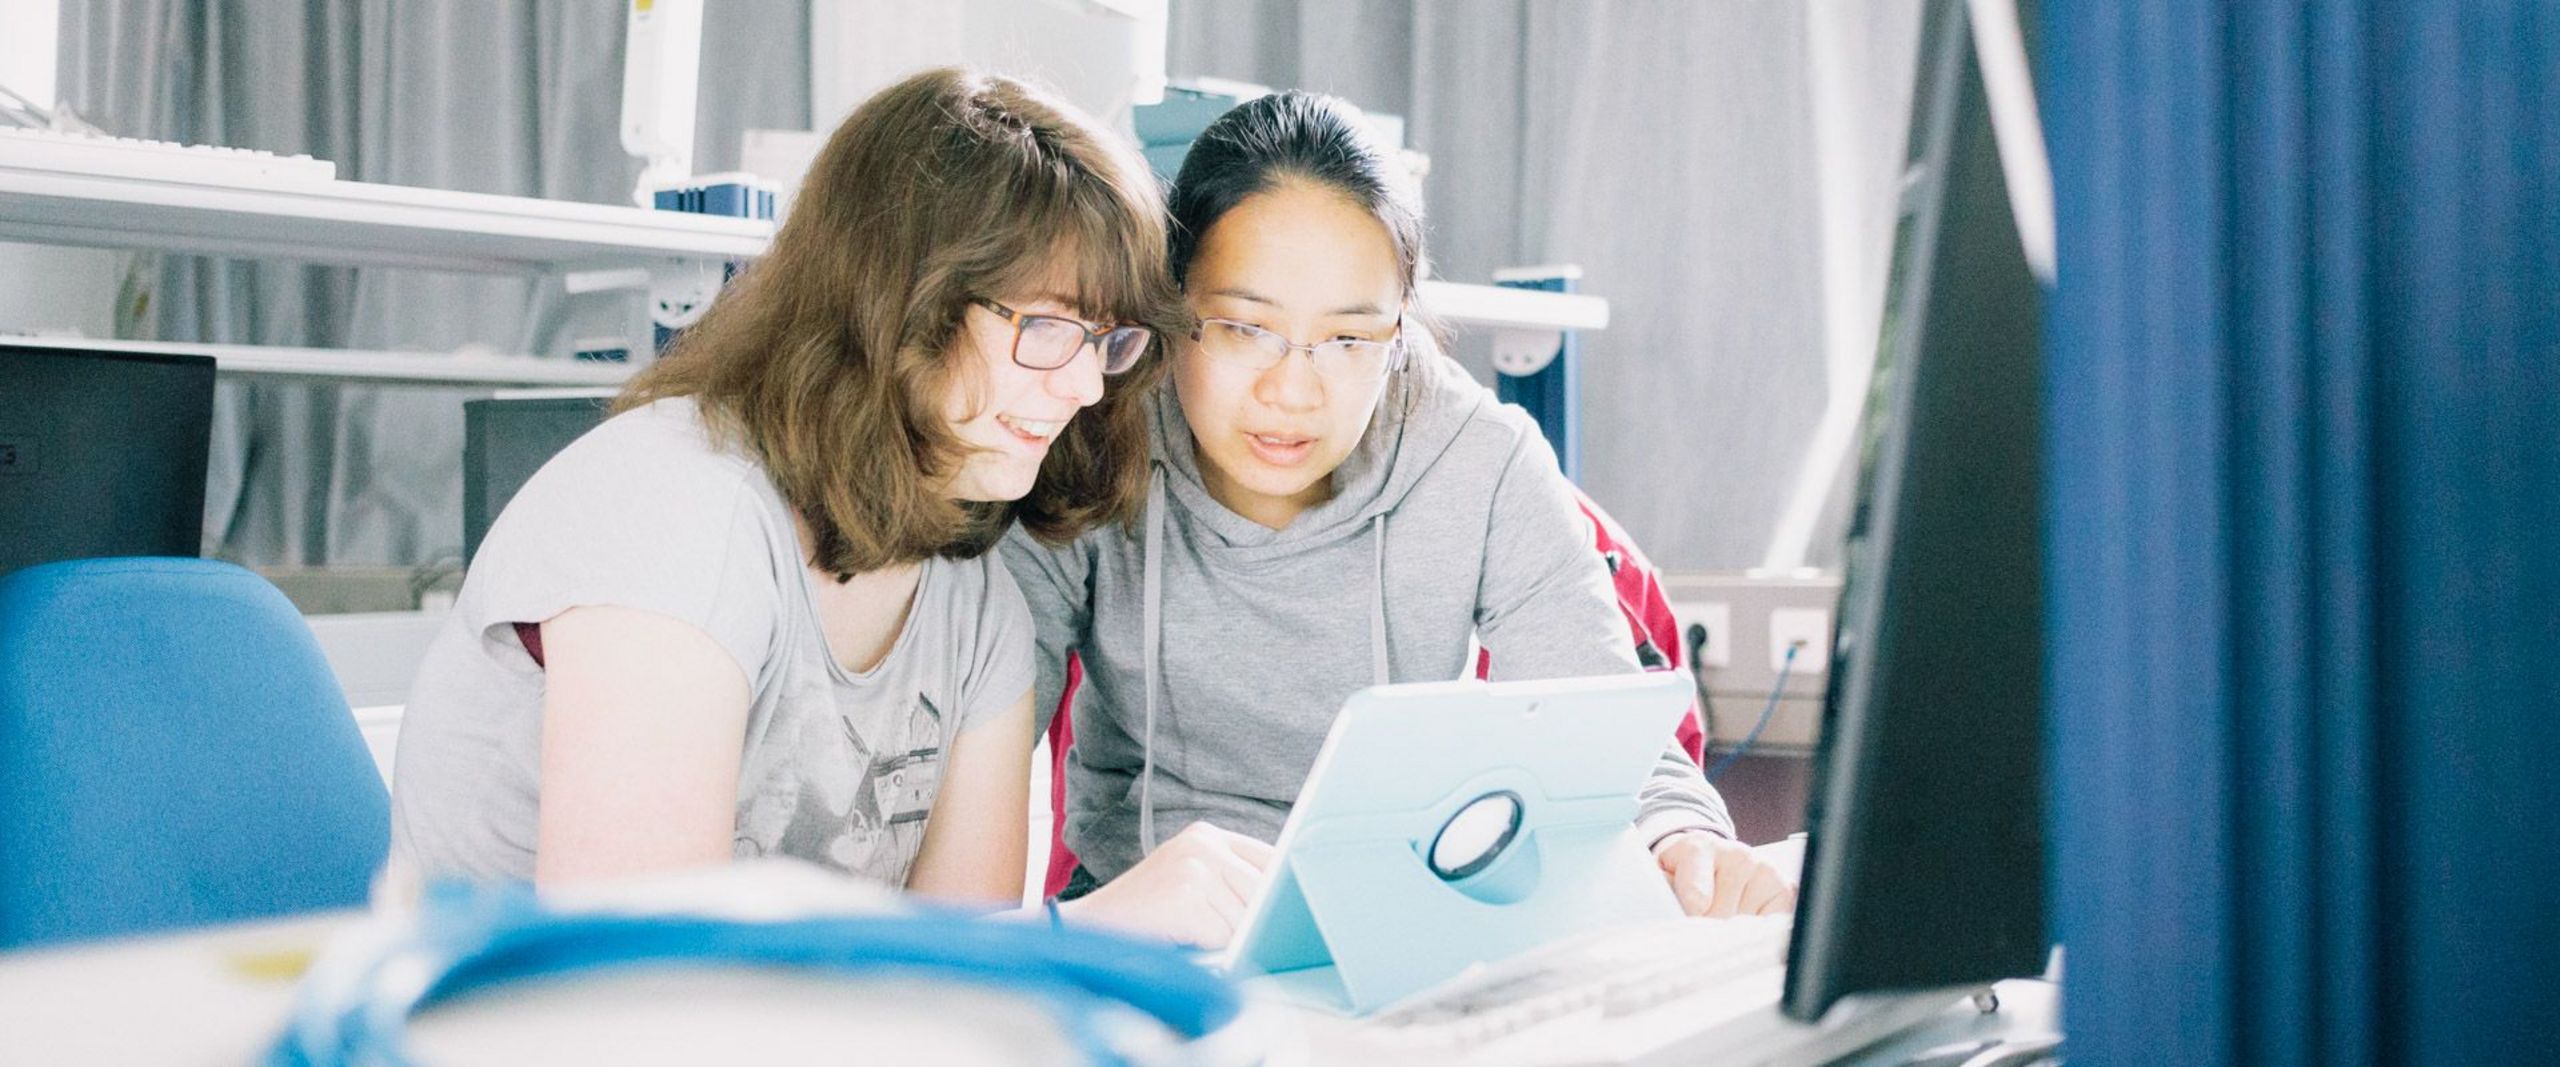 Zwei Studentinnen arbeiten an einem Laptop im Labor.